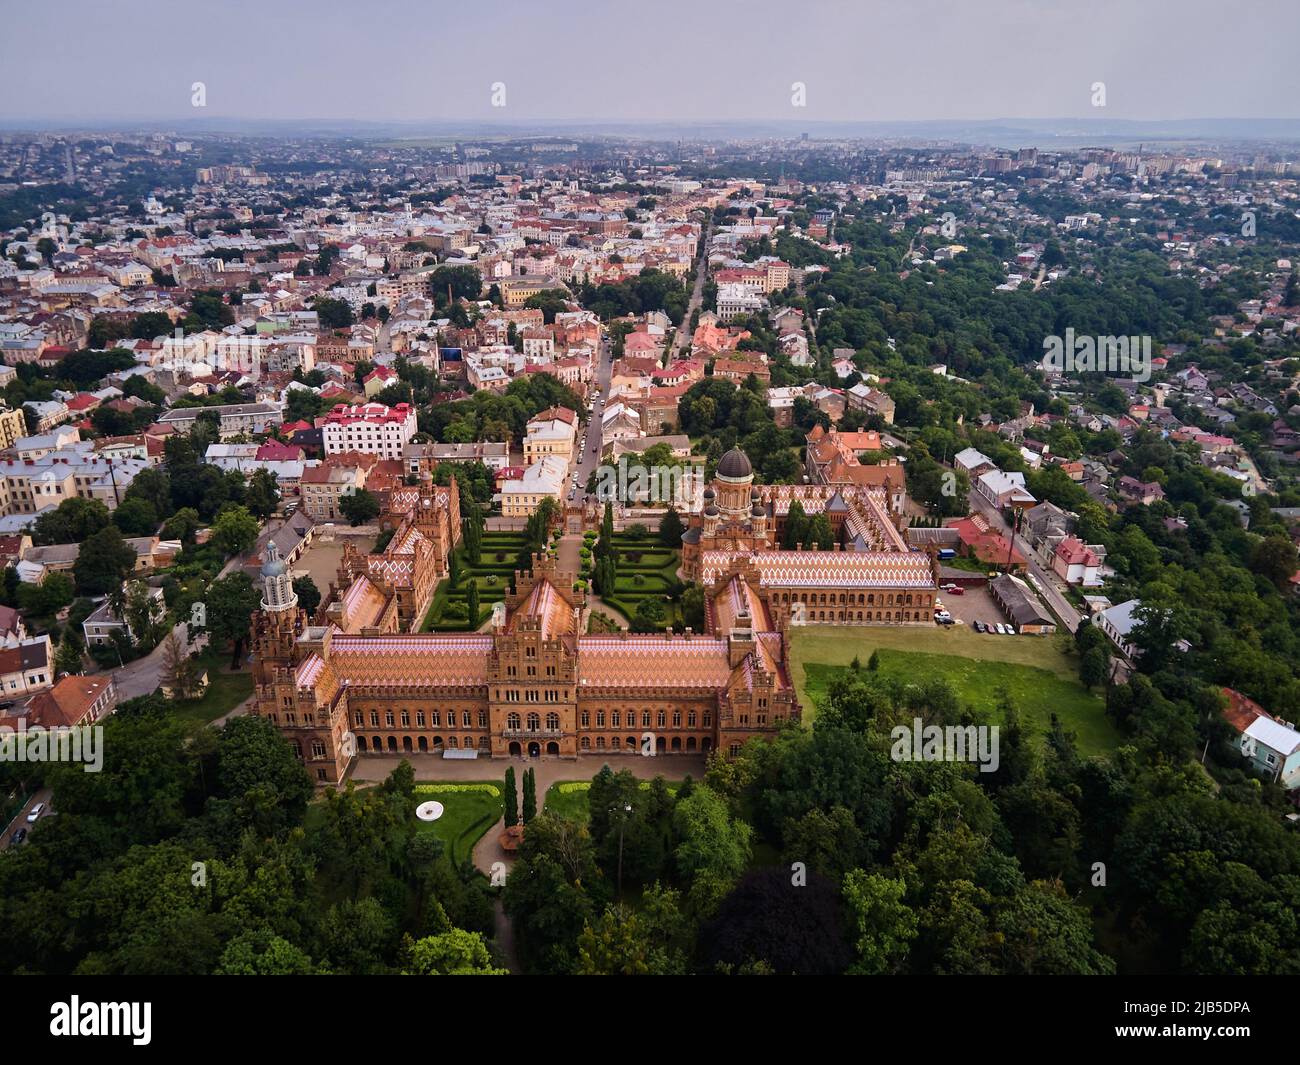 Vue aérienne de l'Université nationale Yuriy Fedkovych Chernivtsi, Ukraine, monuments architecturaux dans l'ouest de l'Ukraine, destination touristique Chernivtsi. Banque D'Images